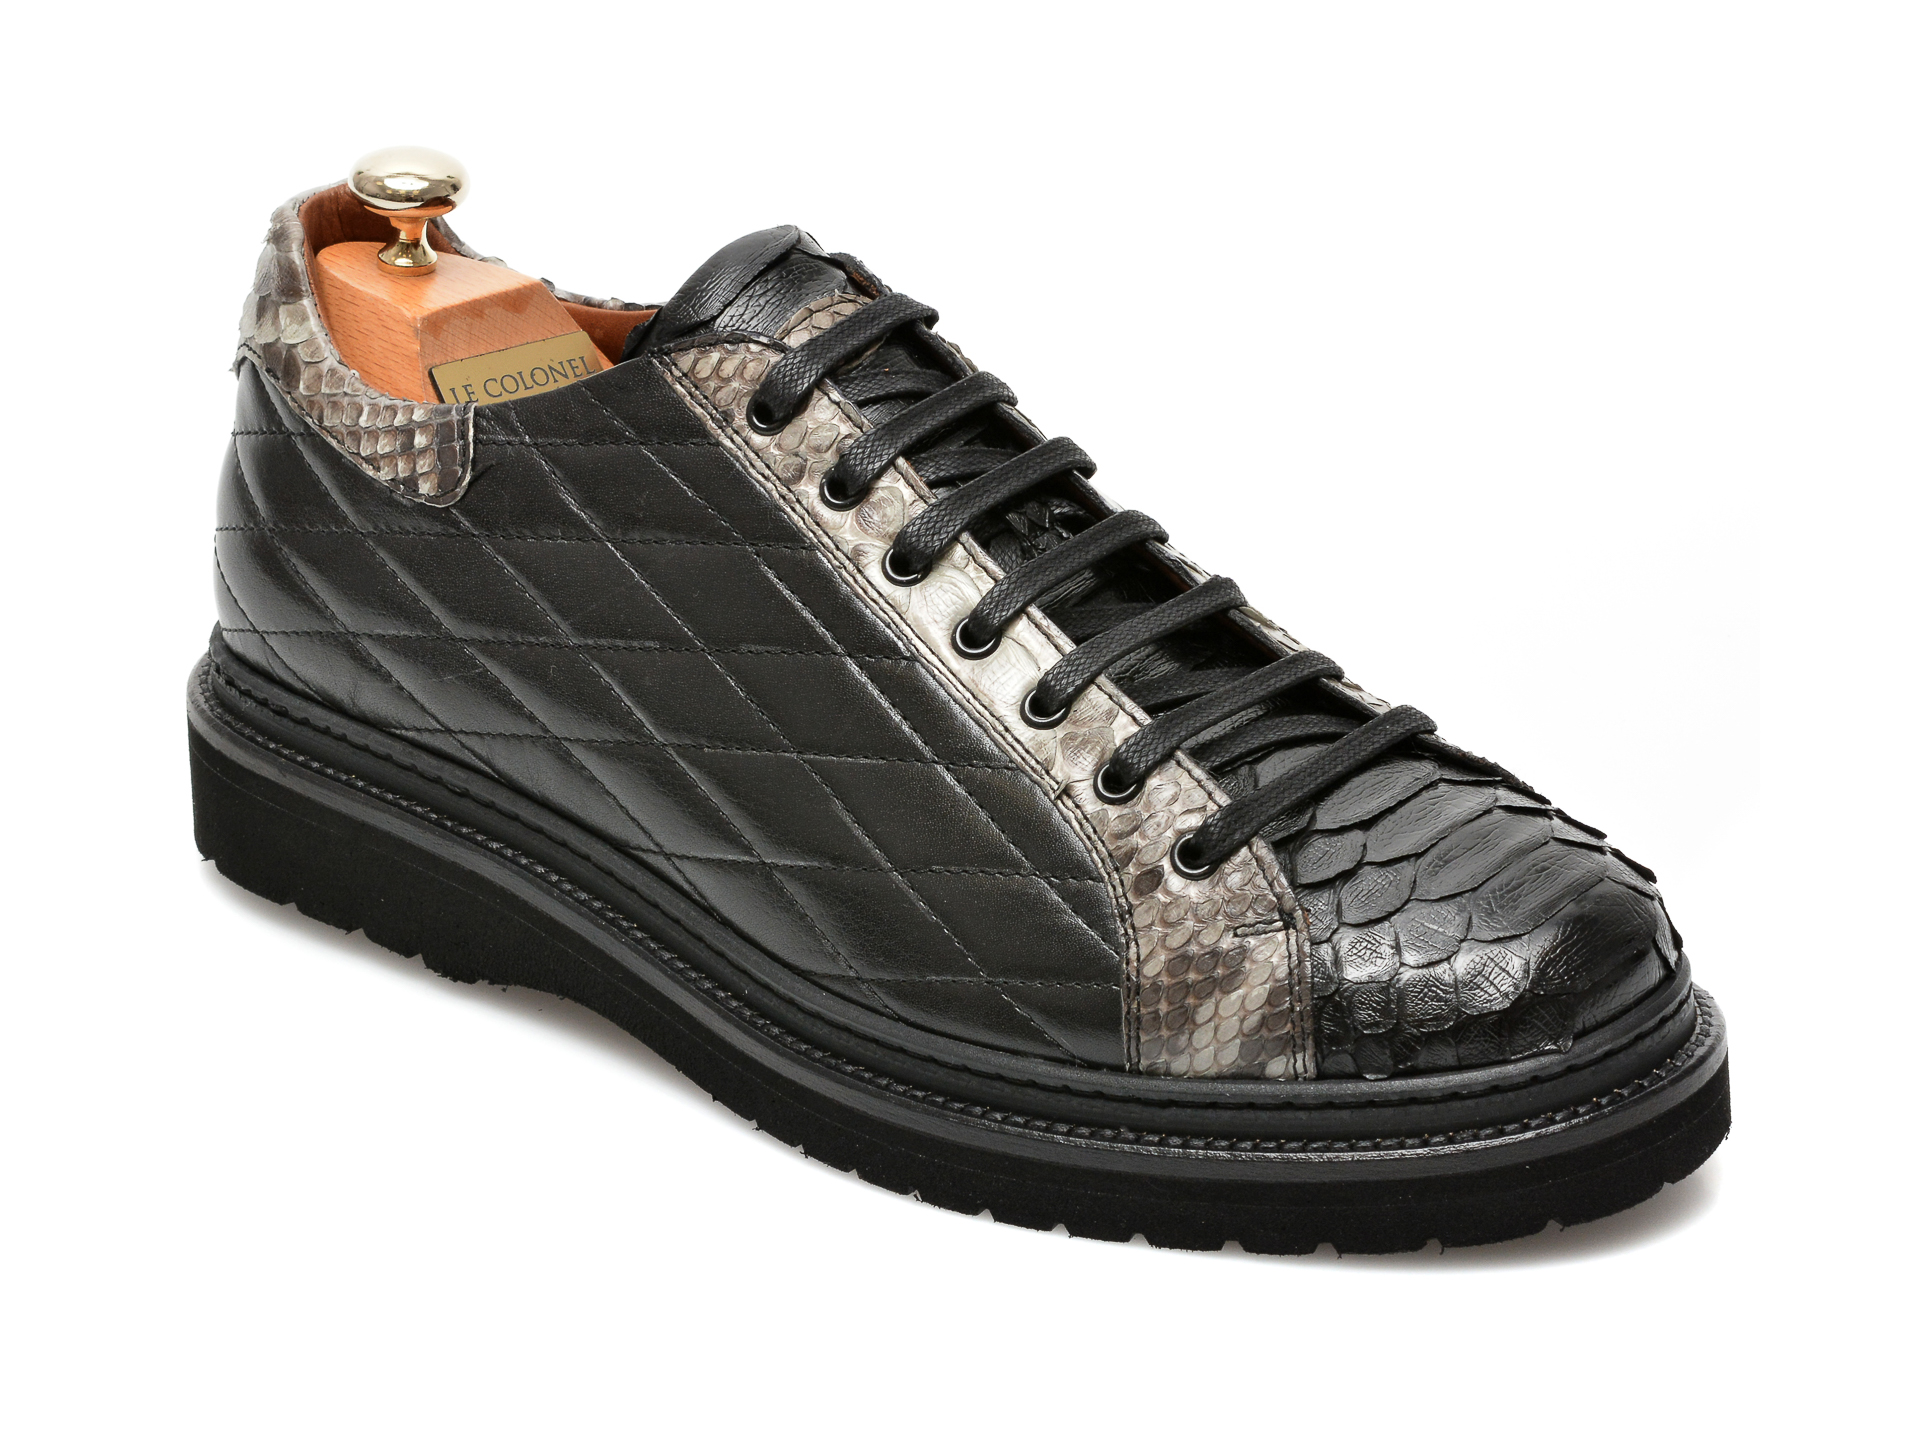 Pantofi LE COLONEL negri, 64802, din piele naturala Le Colonel Le Colonel